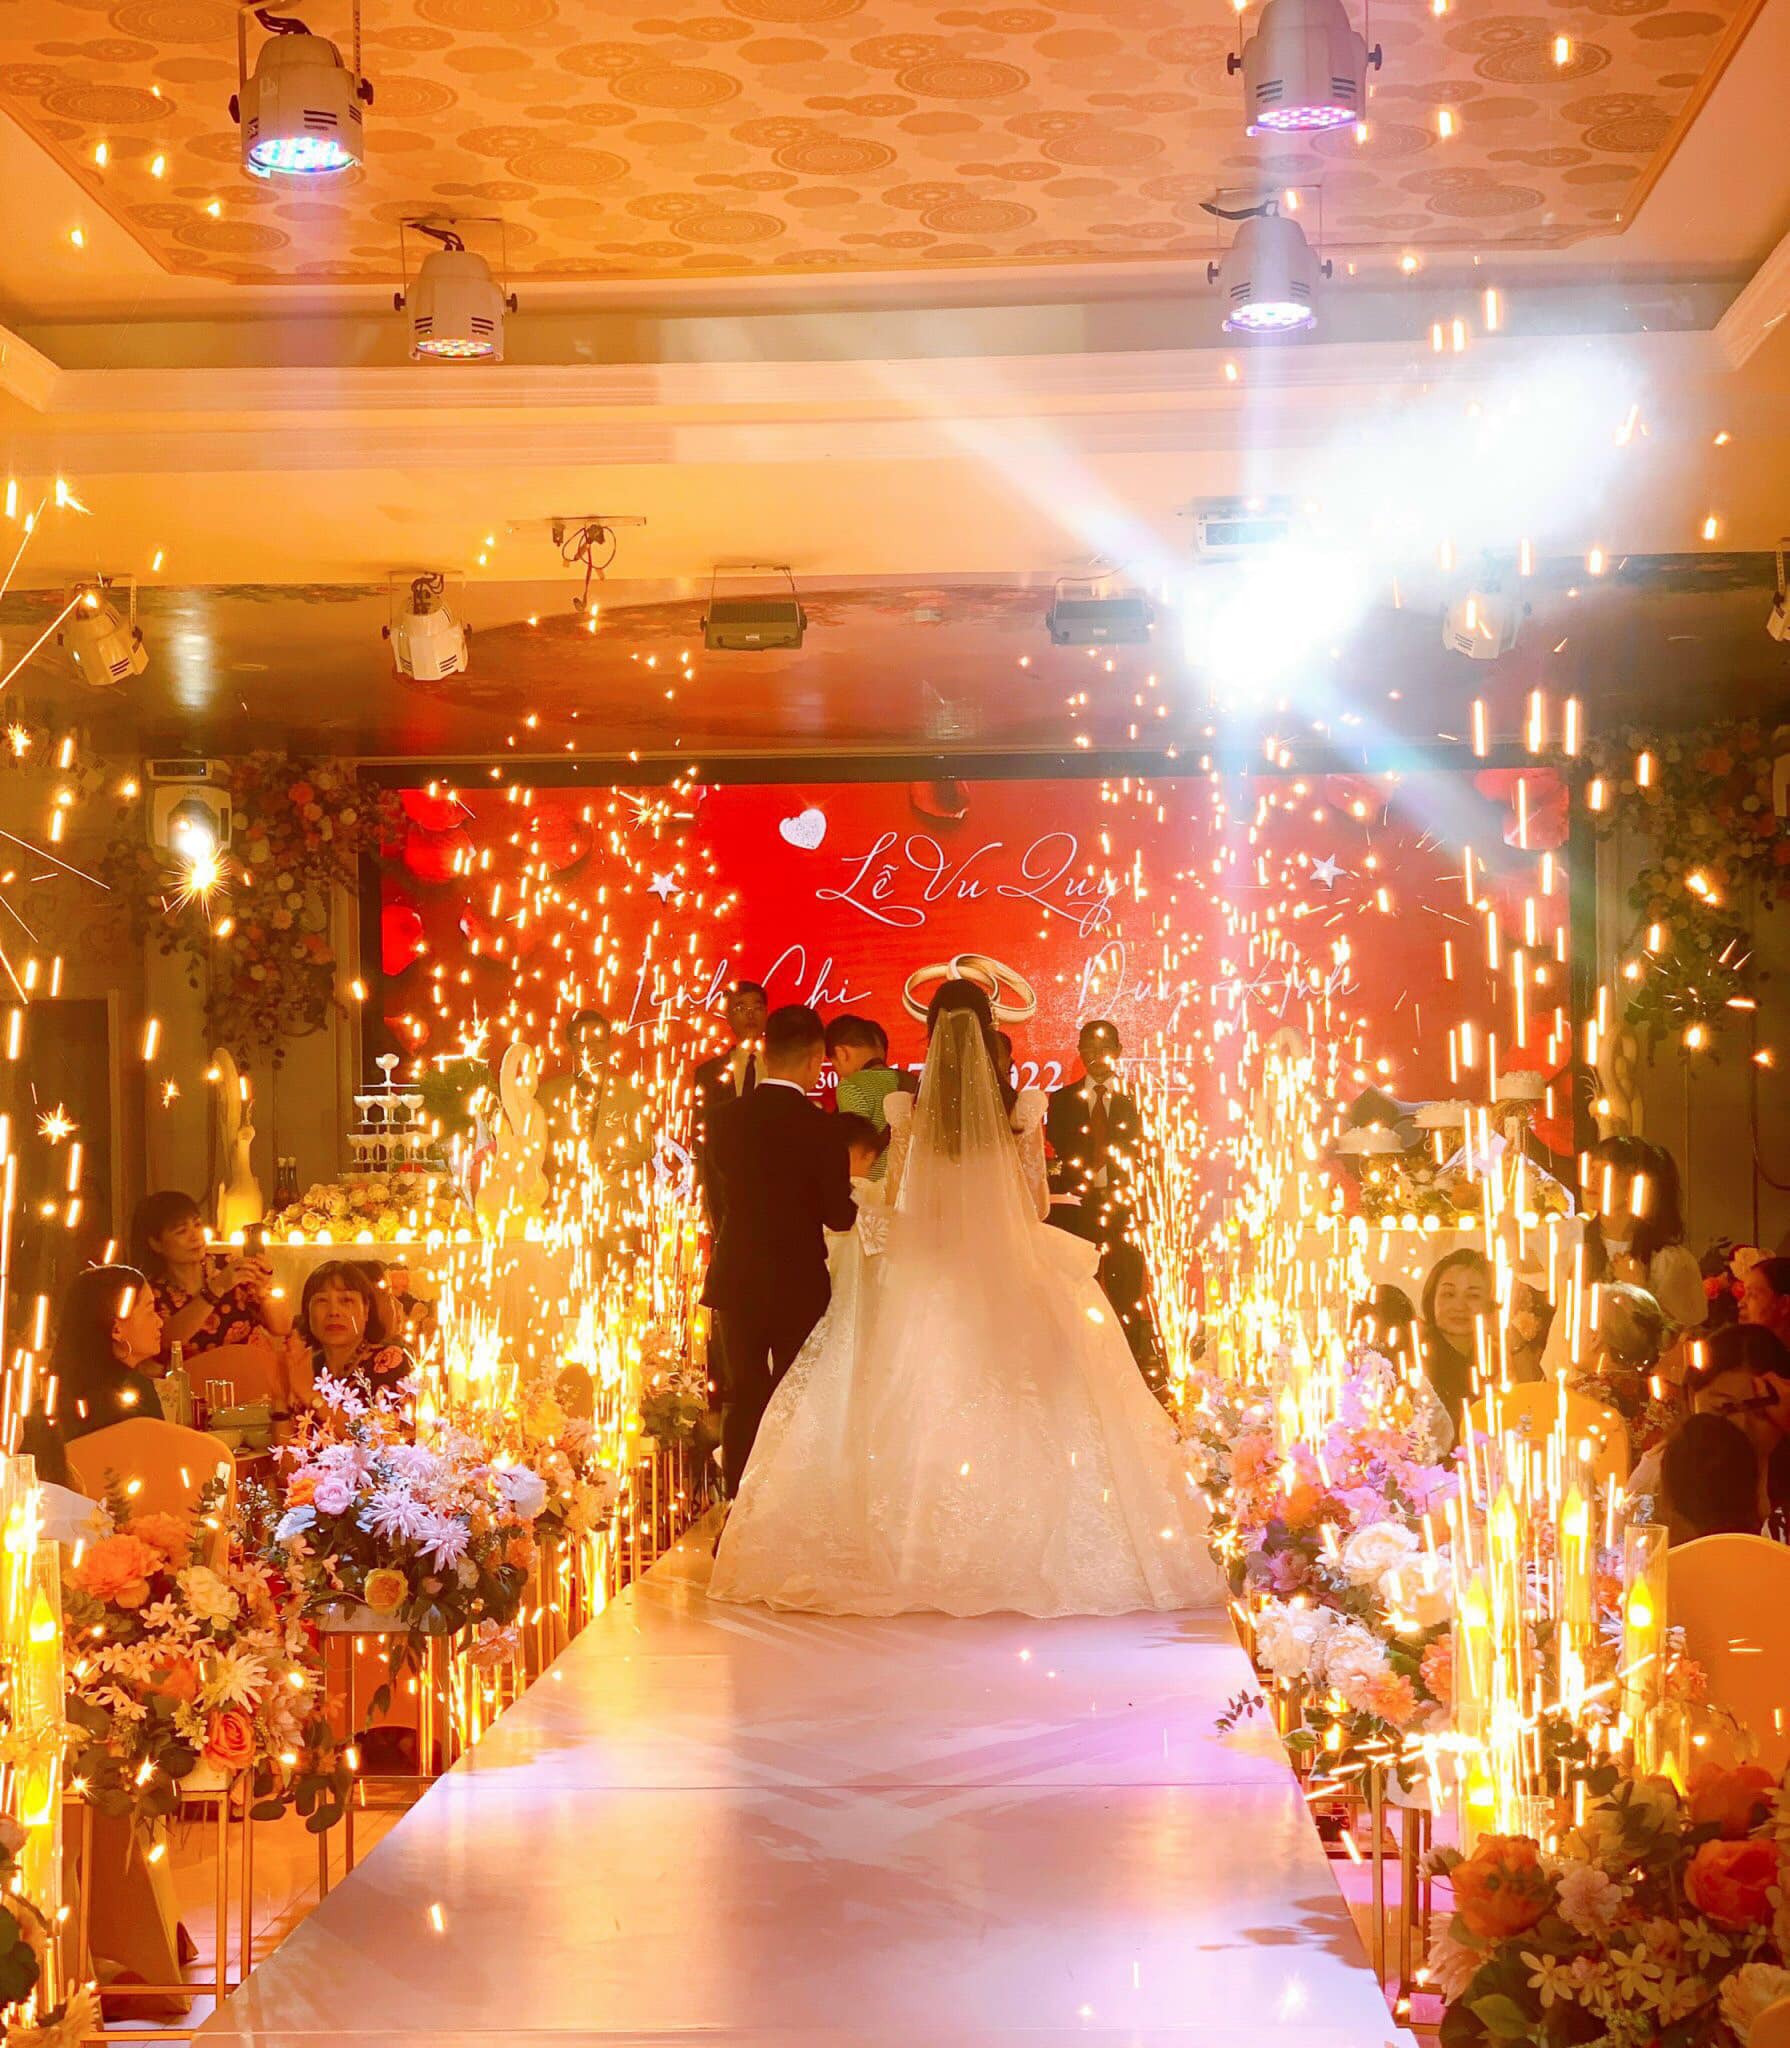 Một lễ cưới hoàn hảo bắt đầu từ việc lựa chọn lễ đường trong mơ, nơi sẽ diễn ra sự kiện đáng nhớ nhất của đời người.